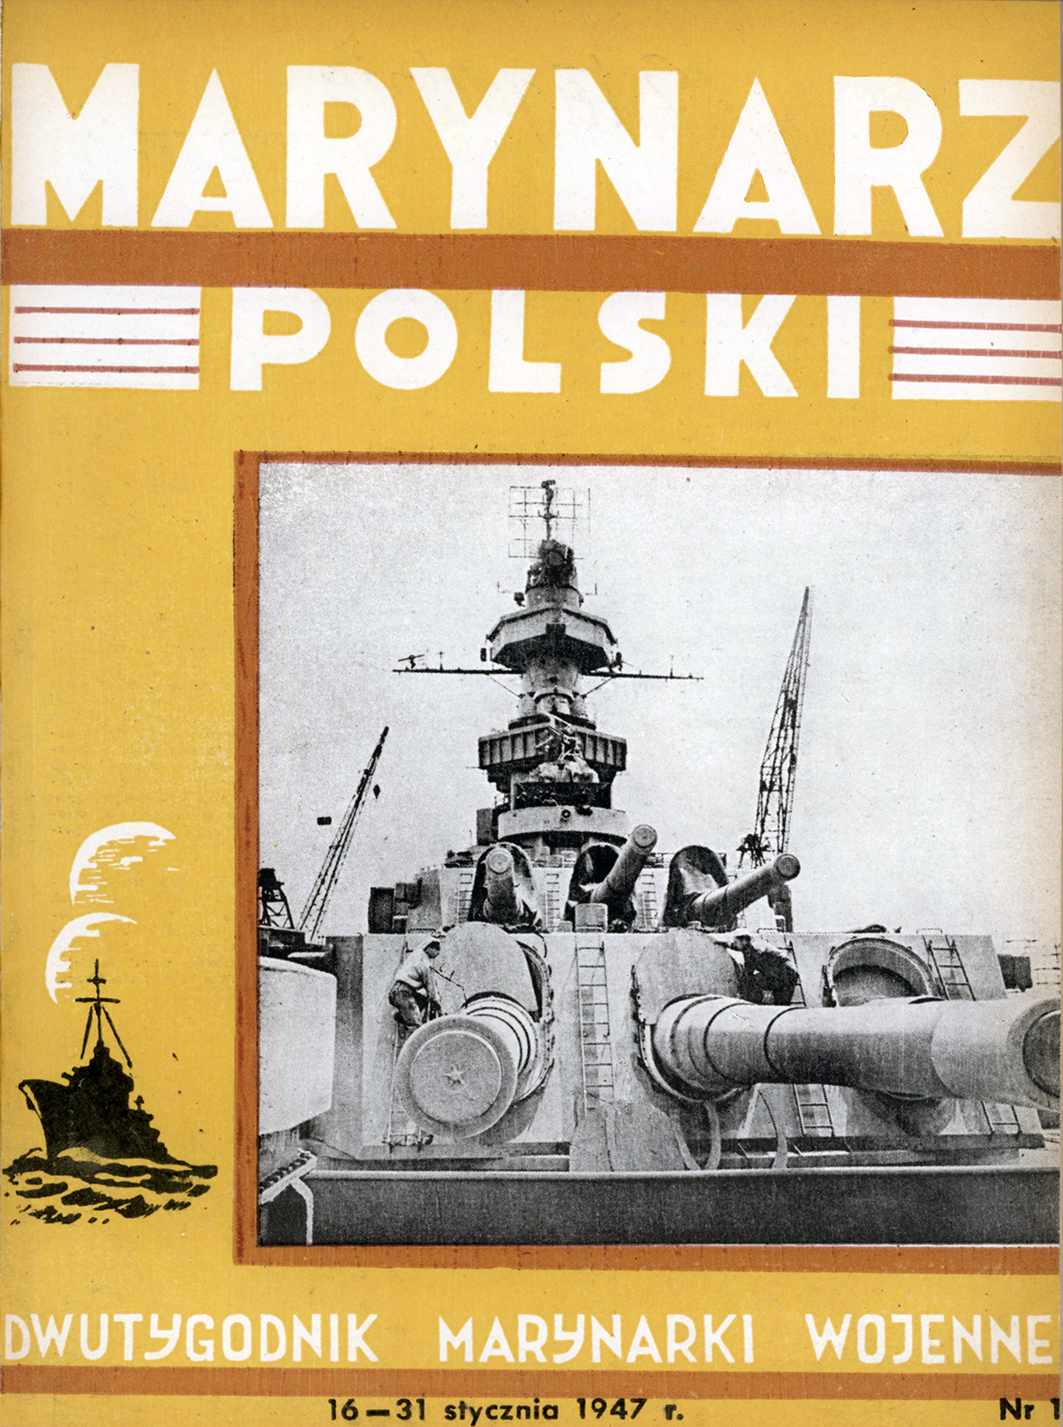 Marynarz Polski : miesięcznik Marynarki Wojennej. - Gdynia : Zarząd Pol.- Wych. Marynarki Wojennej, 1947, 16 - 31 styczeń